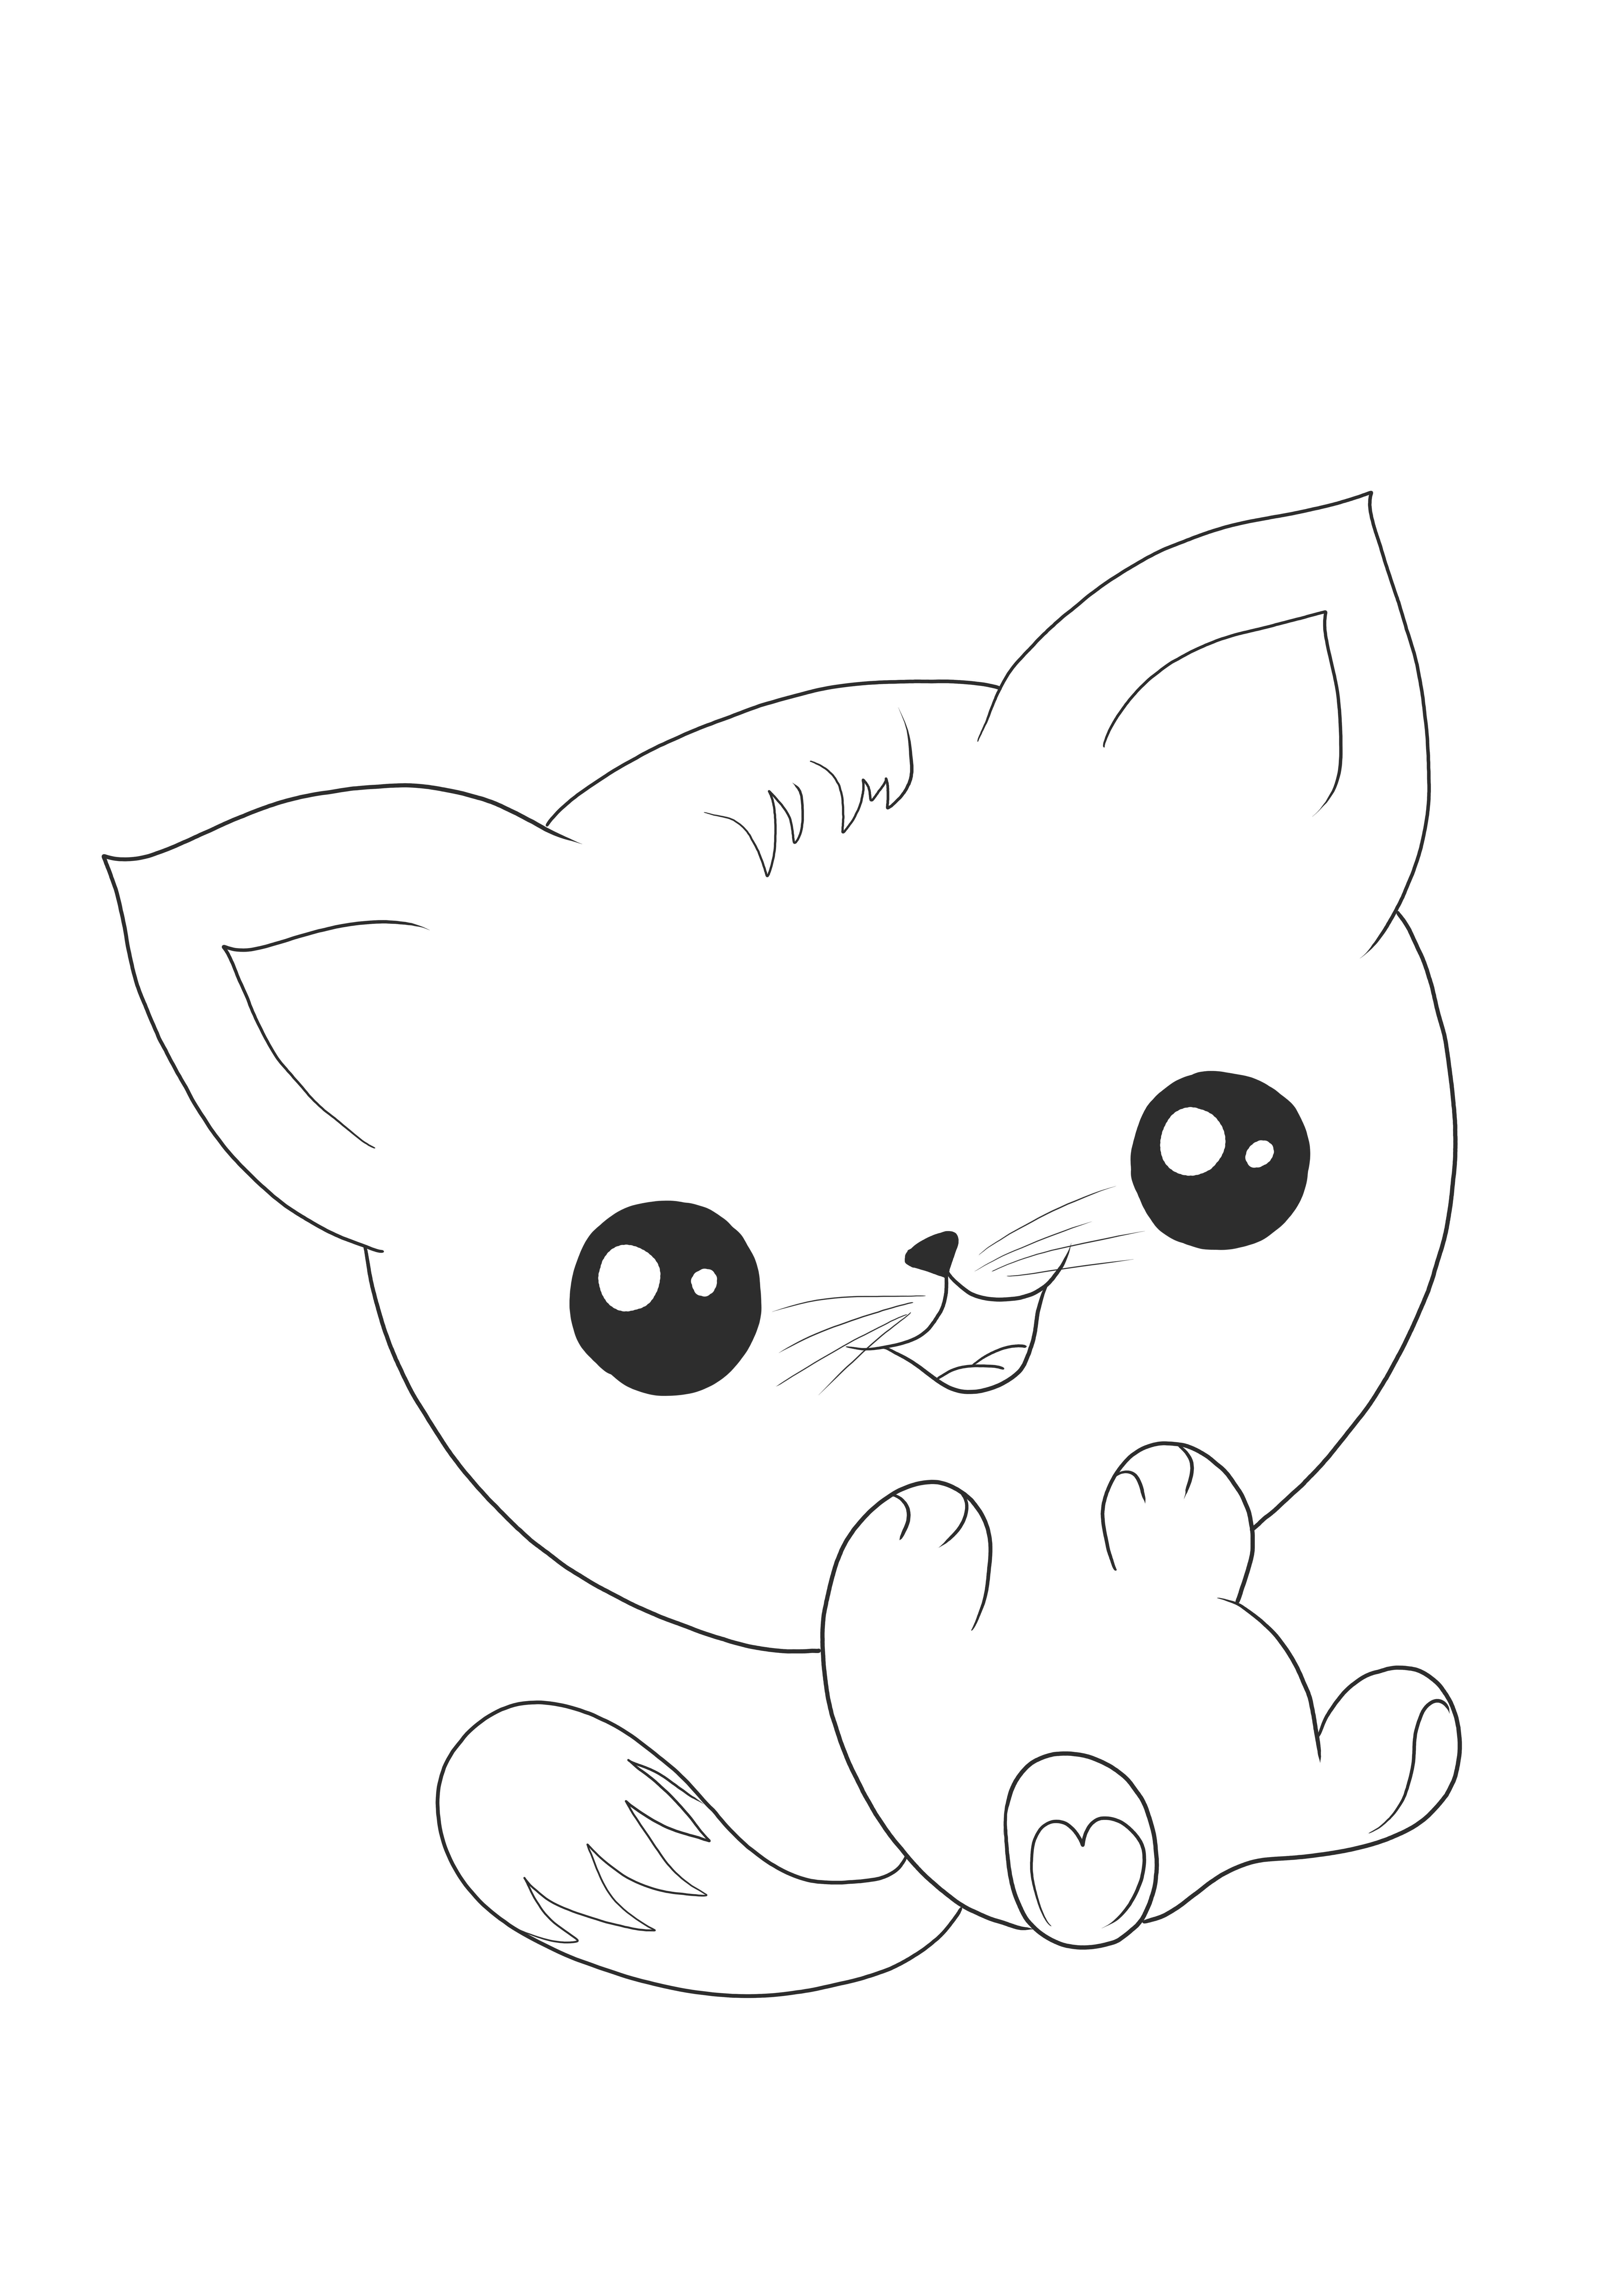 Um fofo gato Kawaii download grátis para colorir